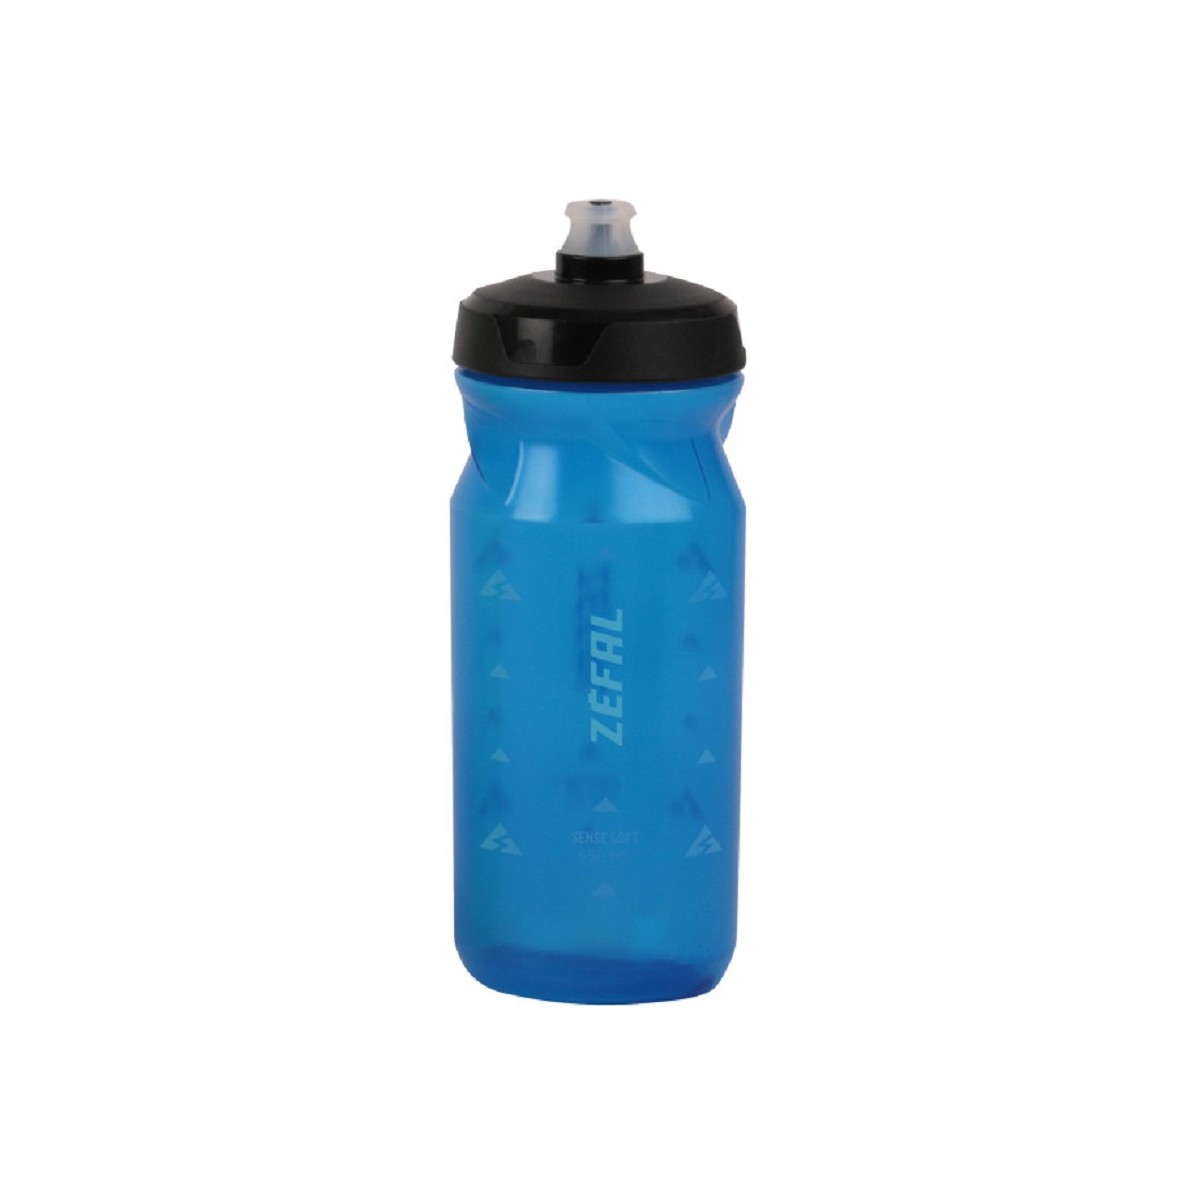 ZEFAL SENSE SOFT 65 650ML water bottle - blue